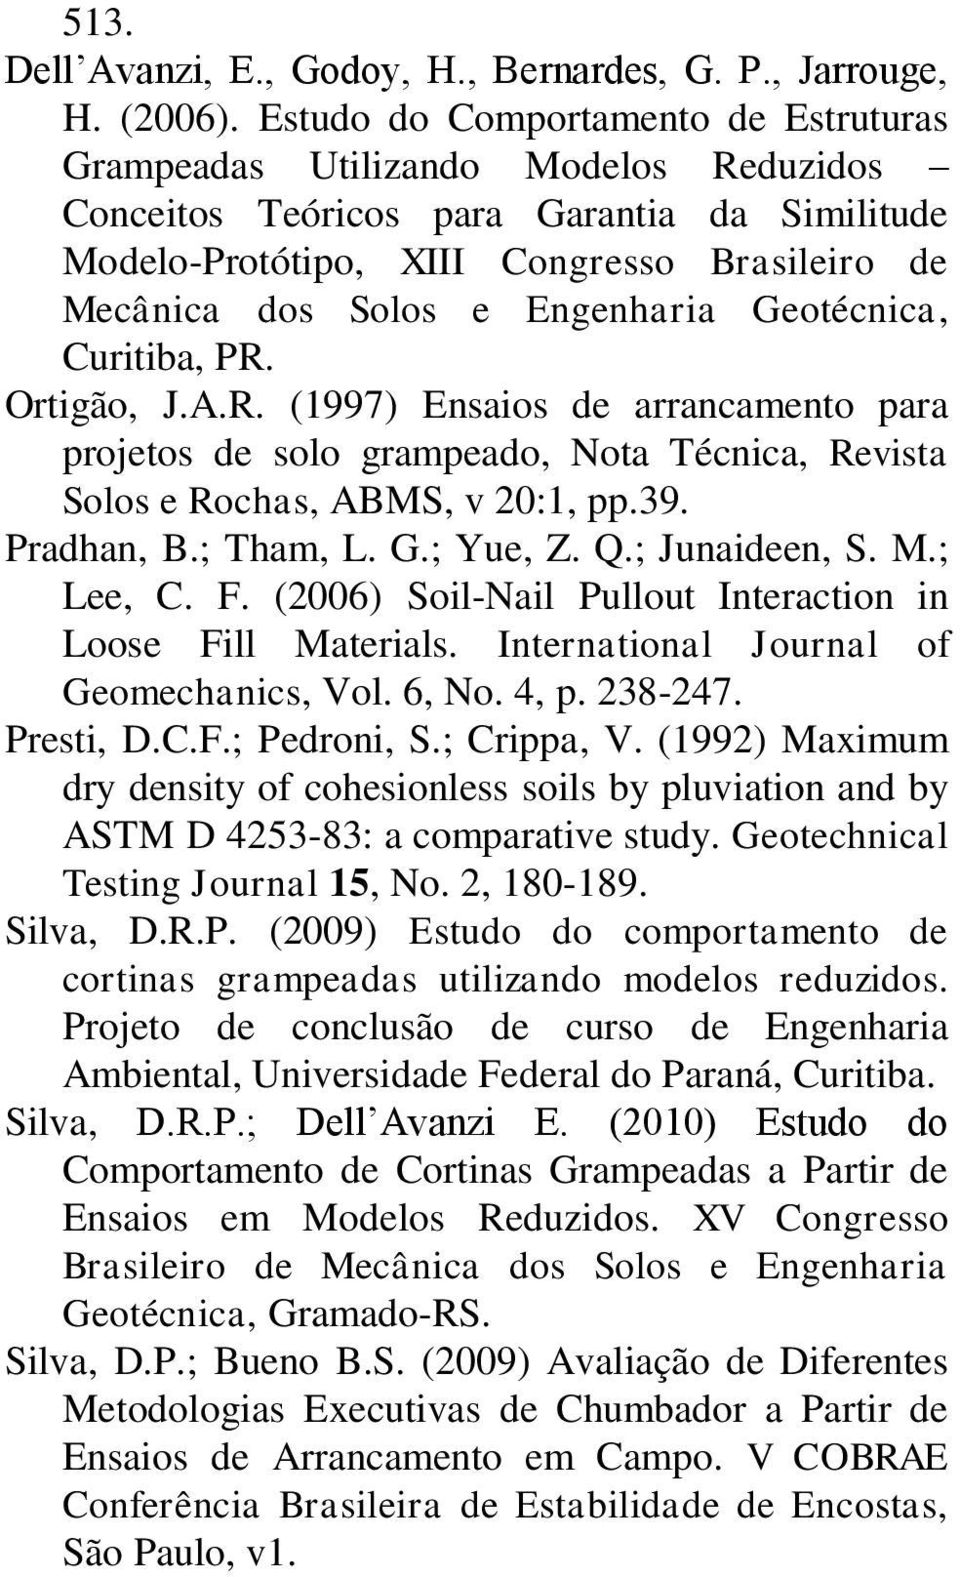 Engenharia Geotécnica, Curitiba, PR. Ortigão, J.A.R. (1997) Ensaios de arrancamento para projetos de solo grampeado, Nota Técnica, Revista Solos e Rochas, ABMS, v 20:1, pp.39. Pradhan, B.; Tham, L. G.; Yue, Z.